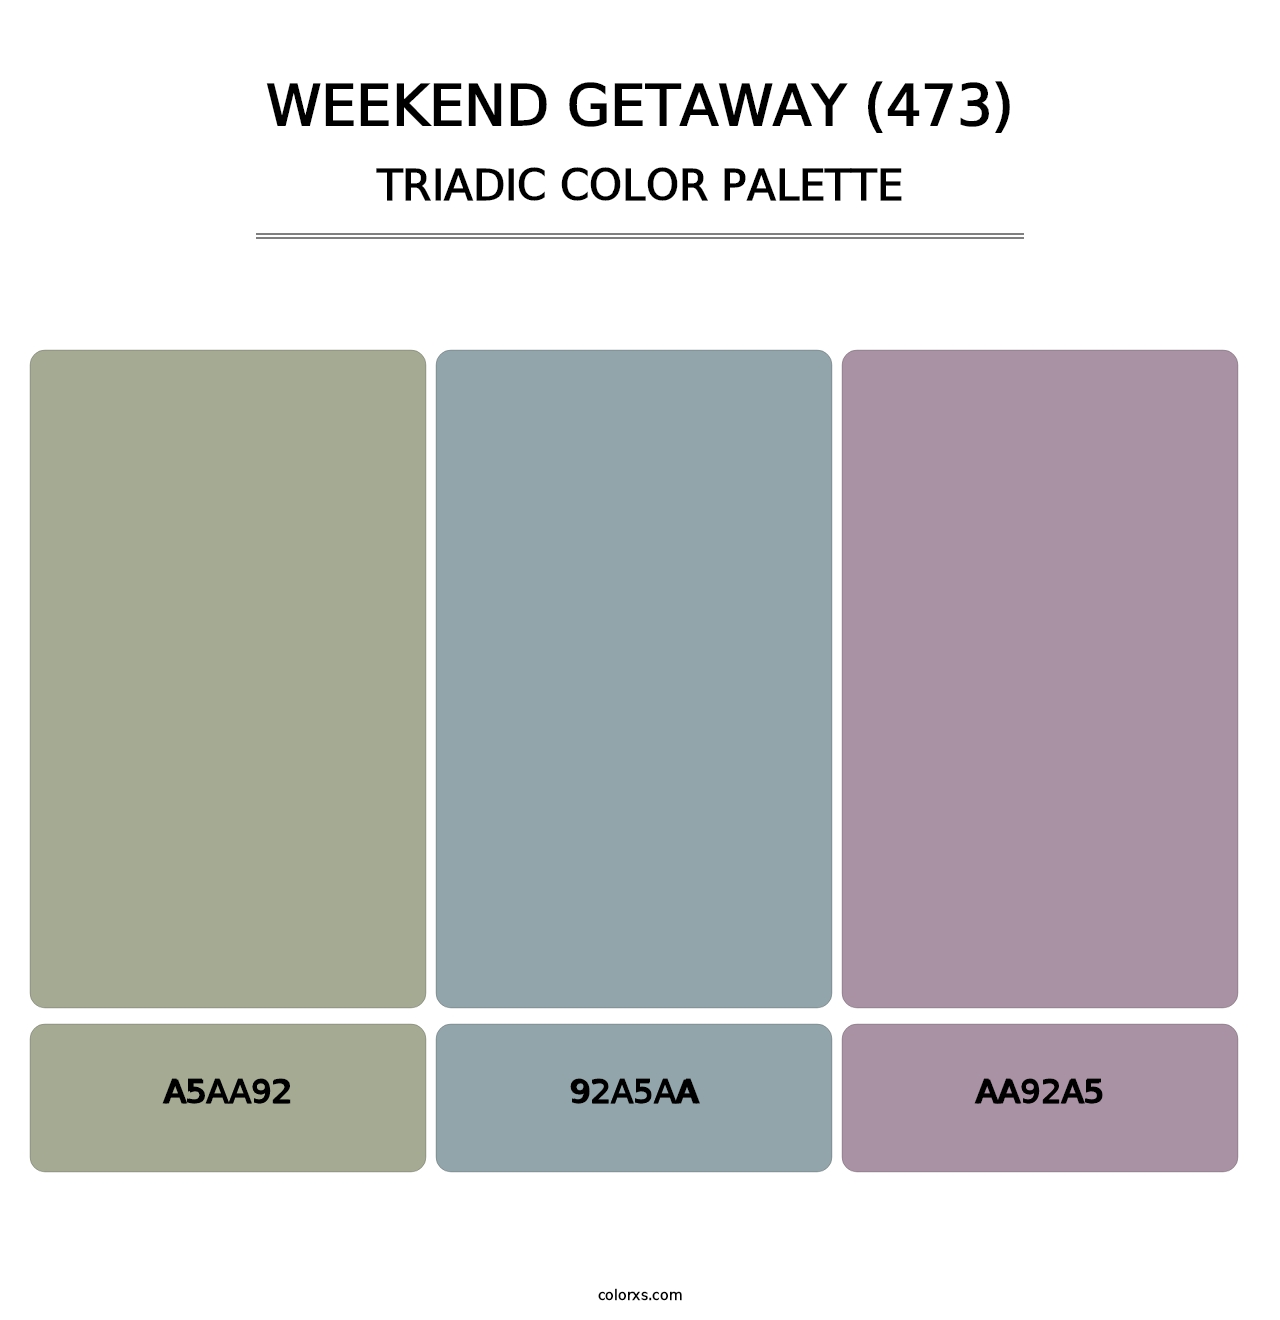 Weekend Getaway (473) - Triadic Color Palette